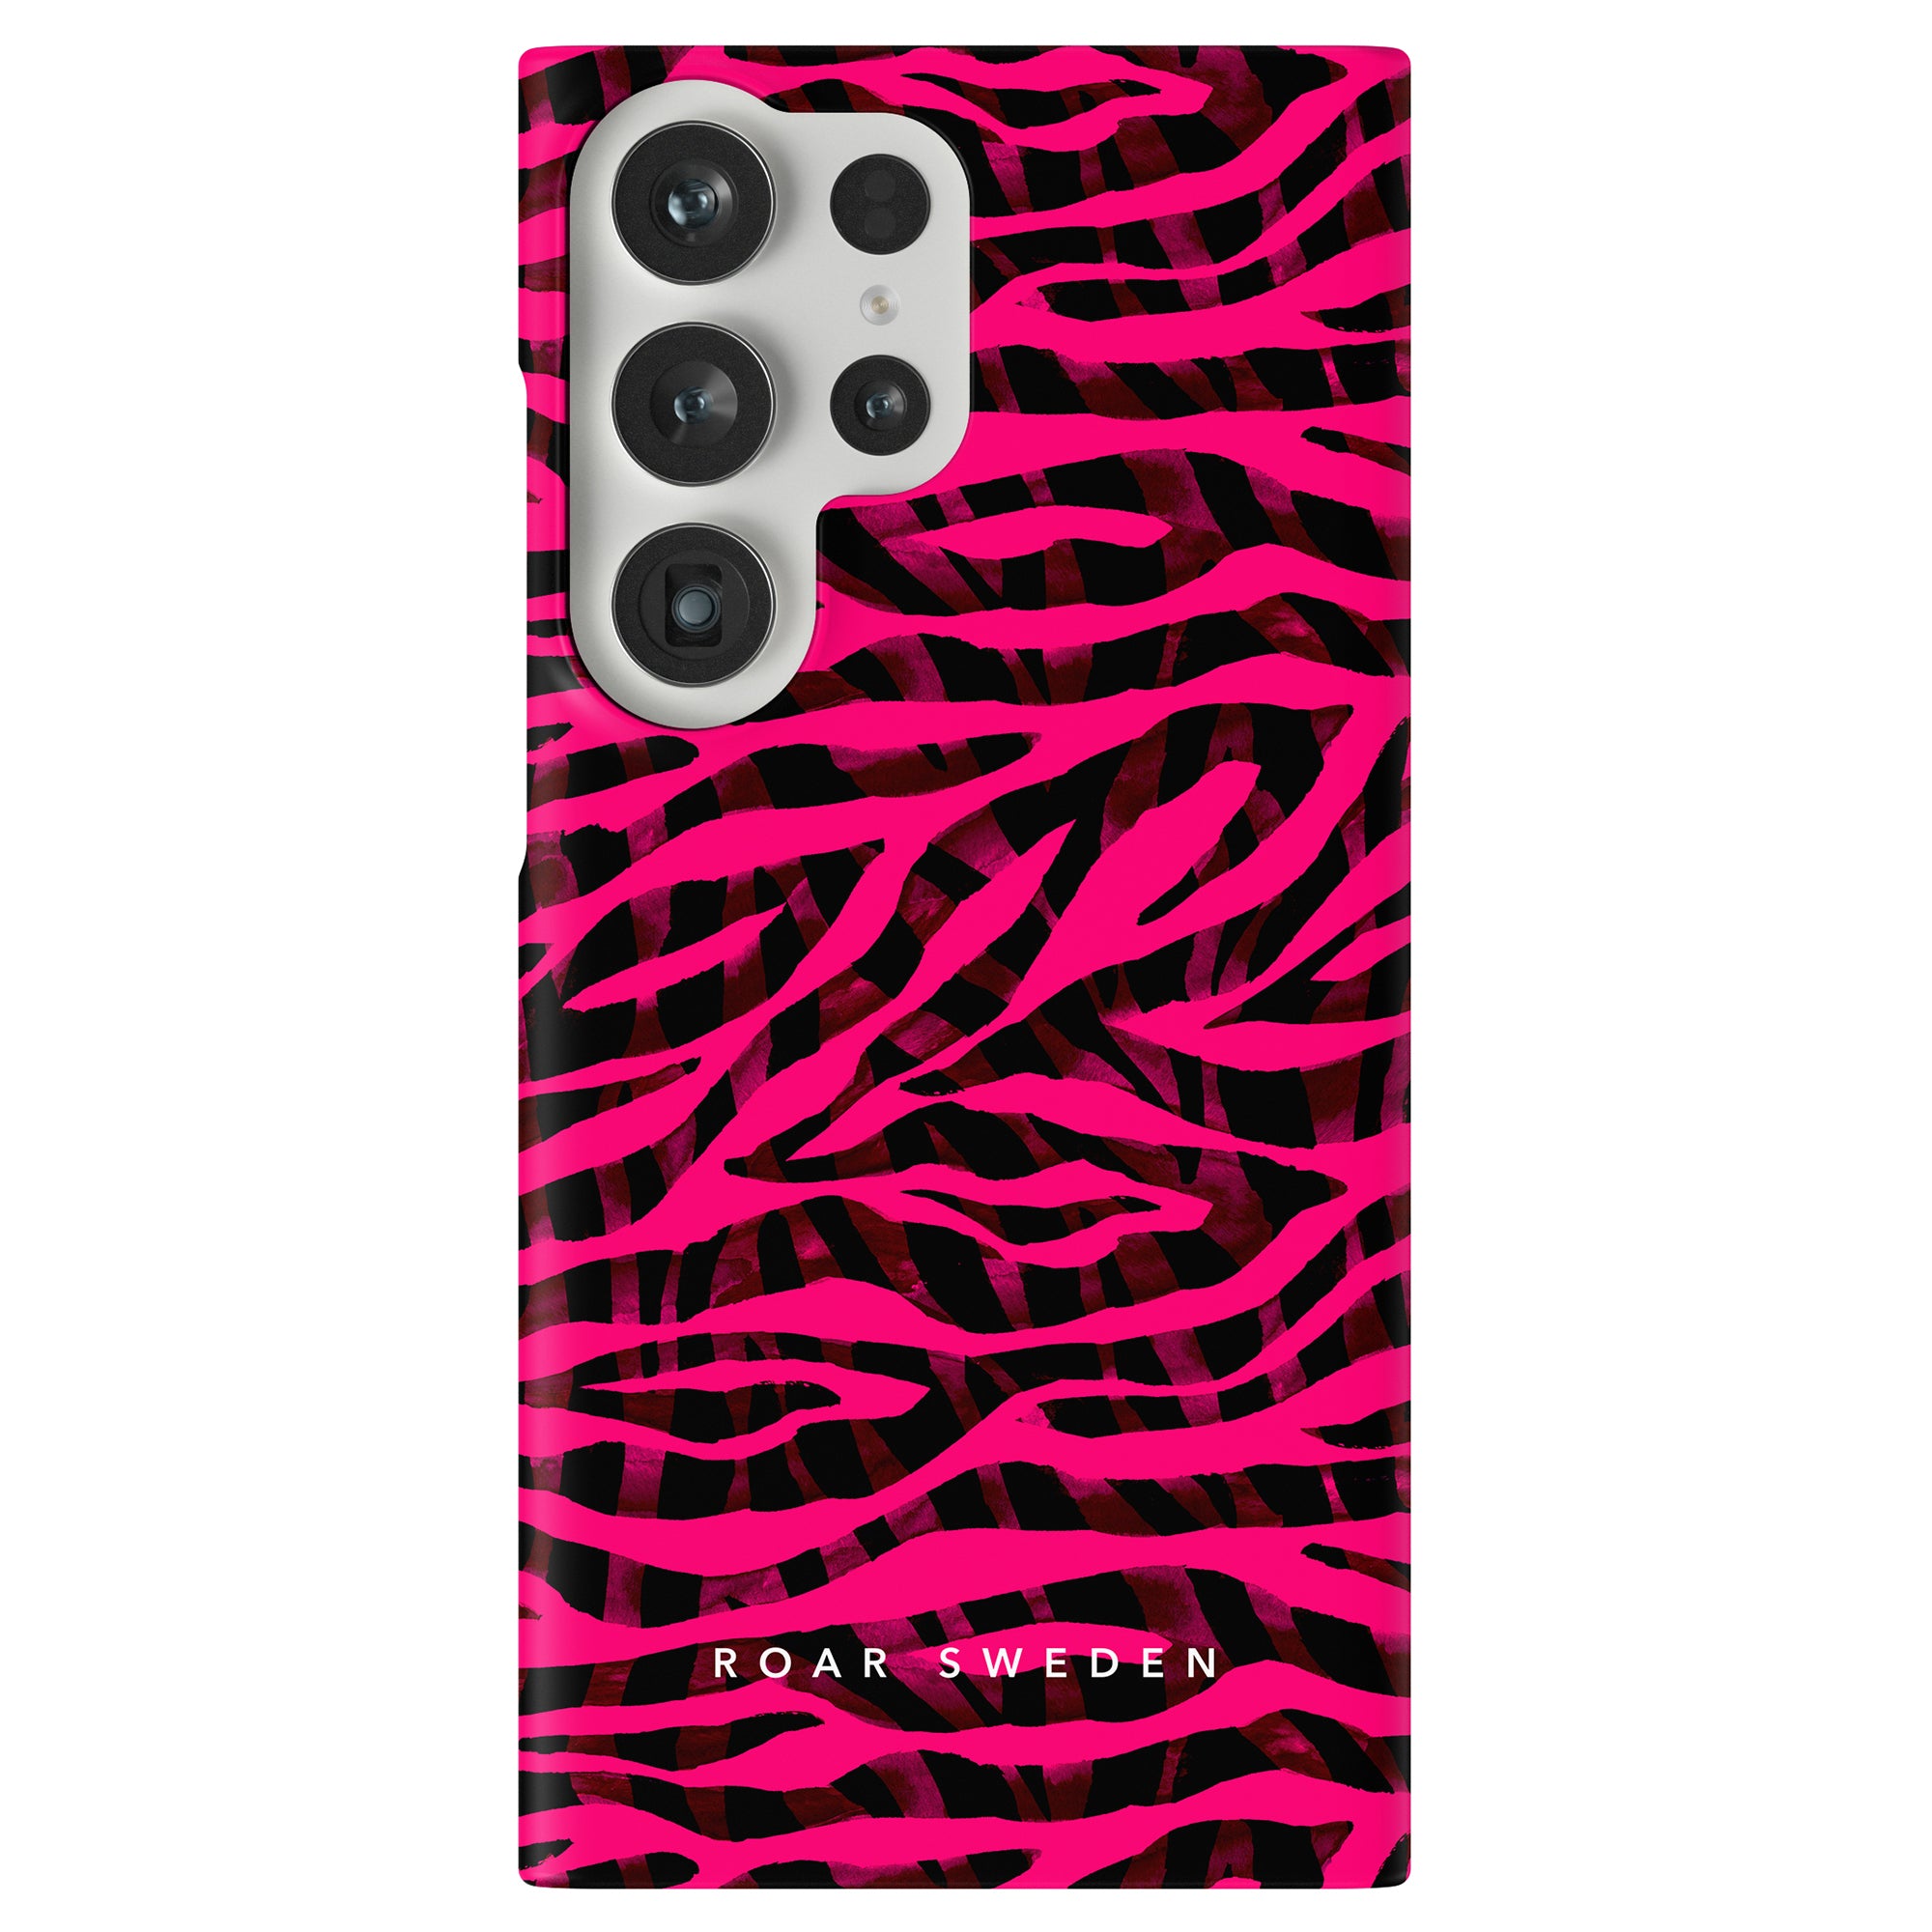 Produktbeskrivning: Pimp Tiger - Slim-fodralet är ett trendigt telefonfodral med zebratryck med ett snyggt rosa och svart färgschema.